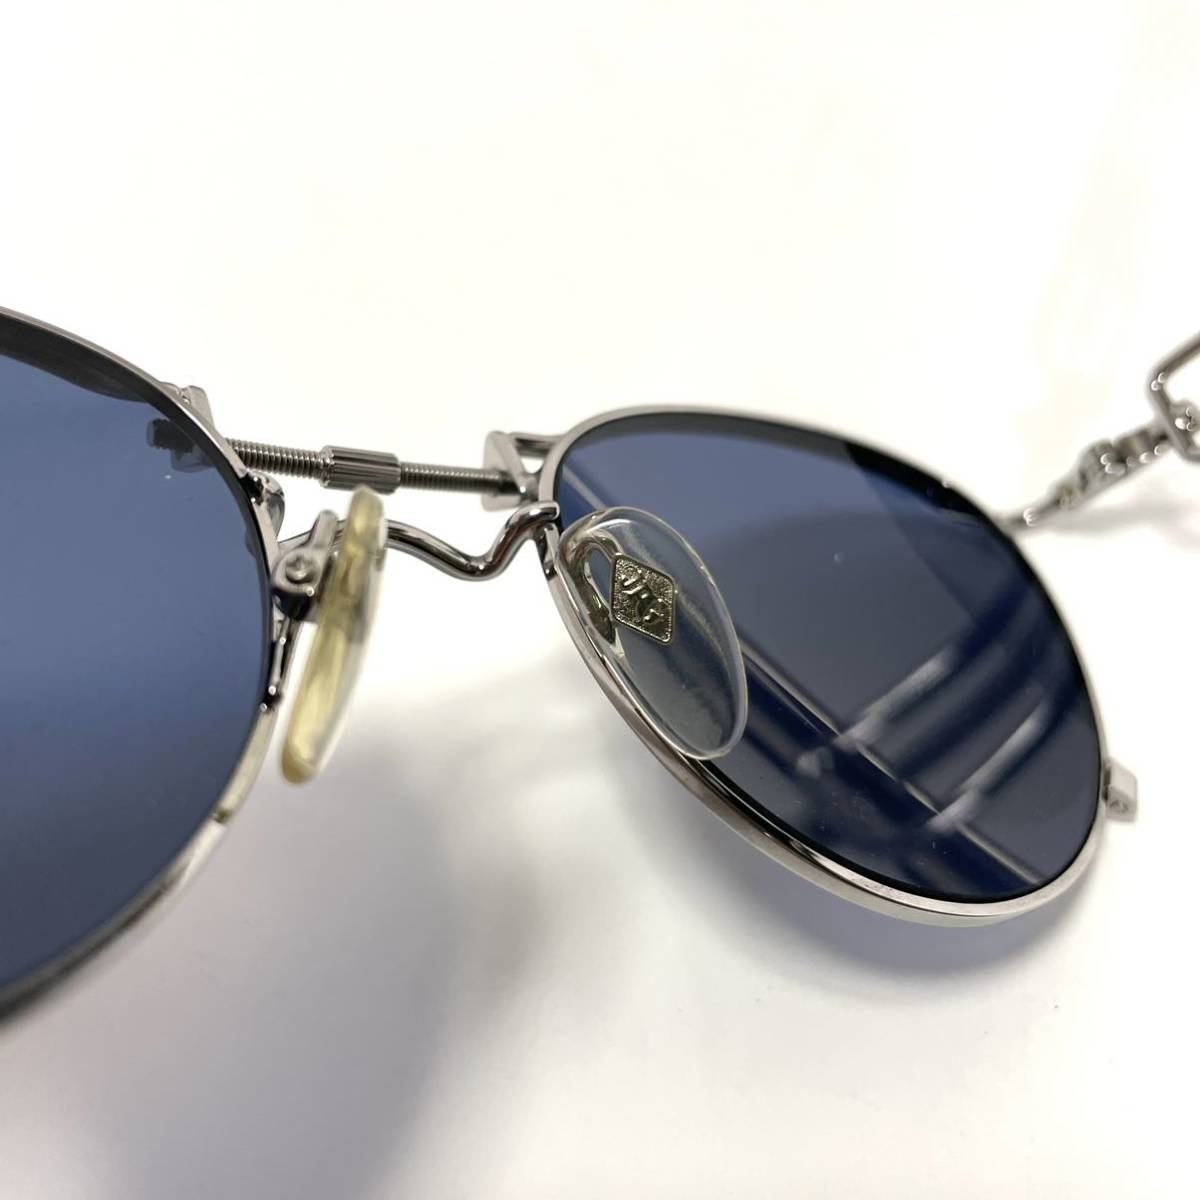  прекрасный наименование товара произведение JPG Jean-Paul Gaultier винт узор овальный type солнцезащитные очки 